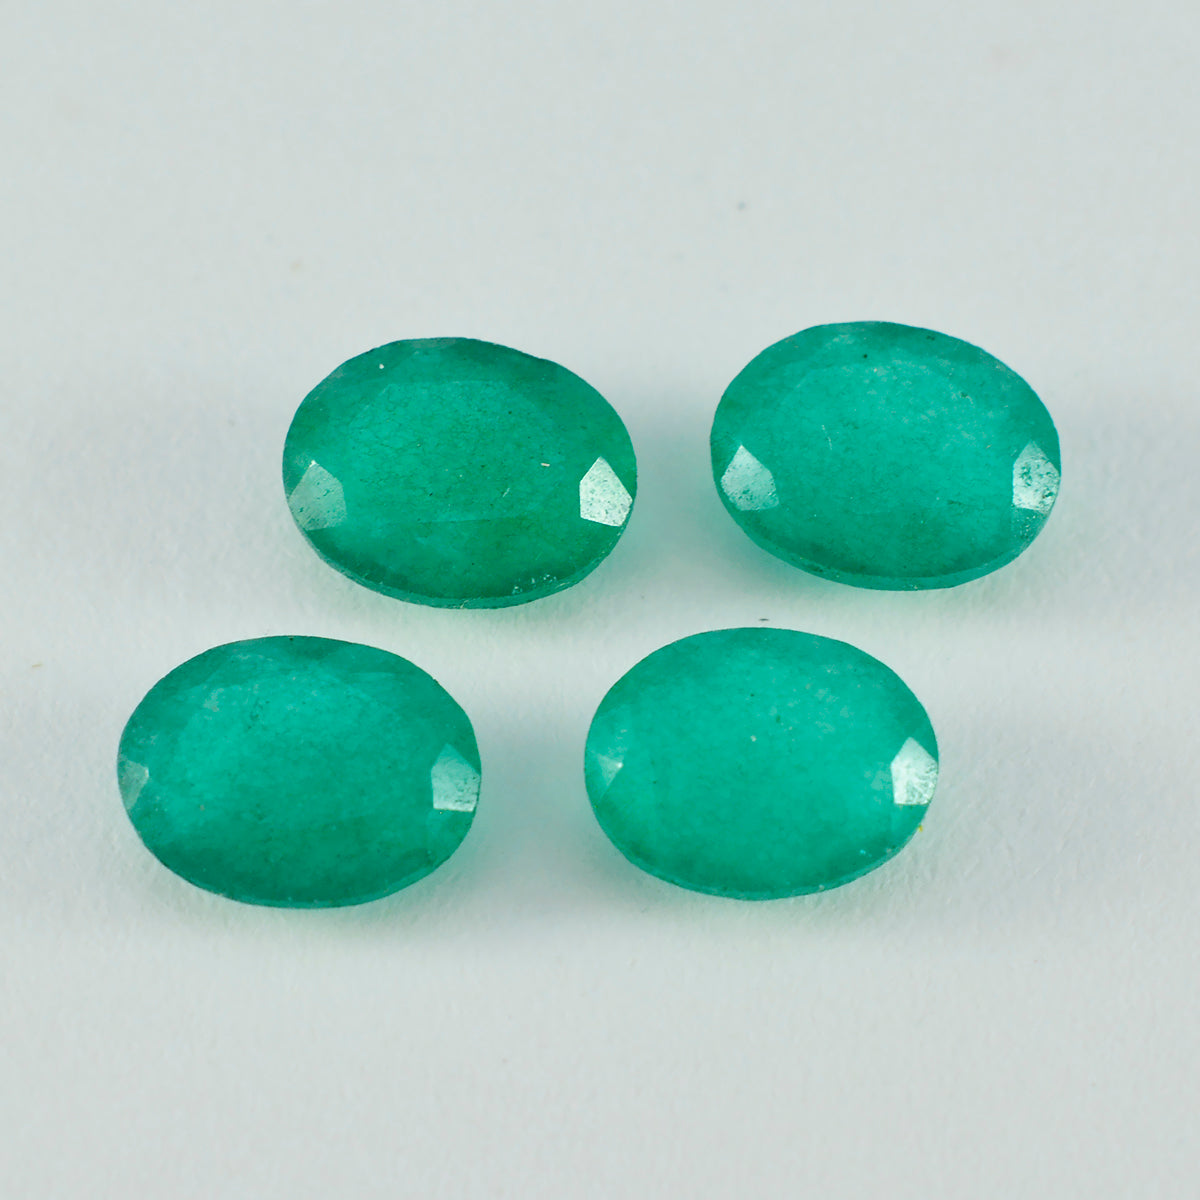 Riyogems 1PC echte groene jaspis gefacetteerd 10x14 mm ovale vorm uitstekende kwaliteit losse edelstenen